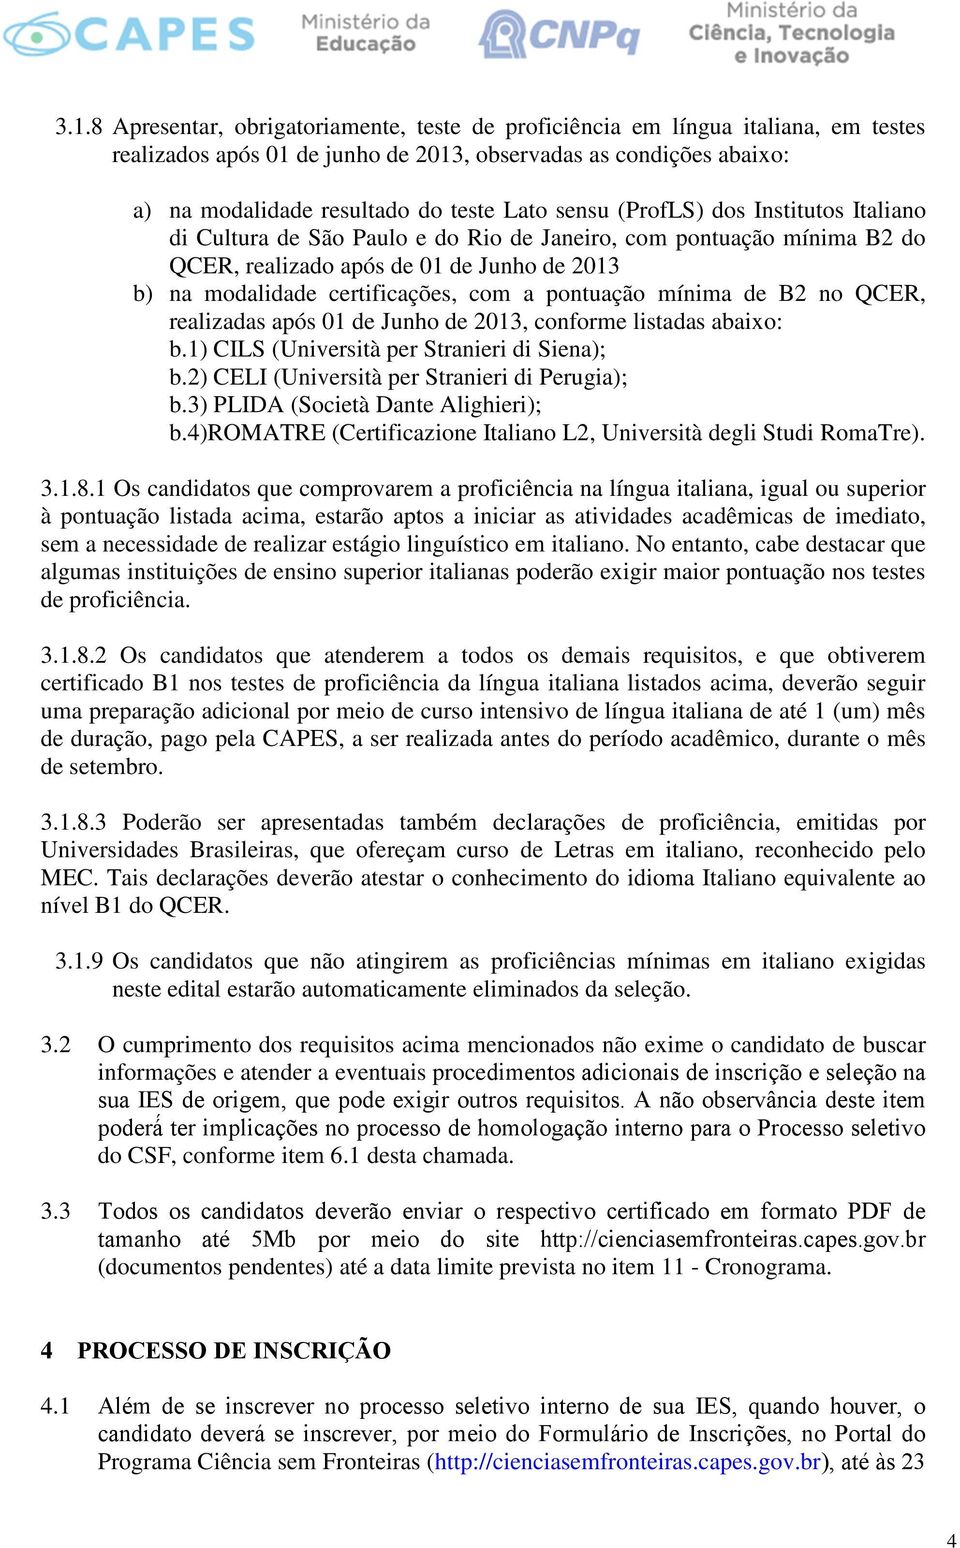 pontuação mínima de B2 no QCER, realizadas após 01 de Junho de 2013, conforme listadas abaixo: b.1) CILS (Università per Stranieri di Siena); b.2) CELI (Università per Stranieri di Perugia); b.